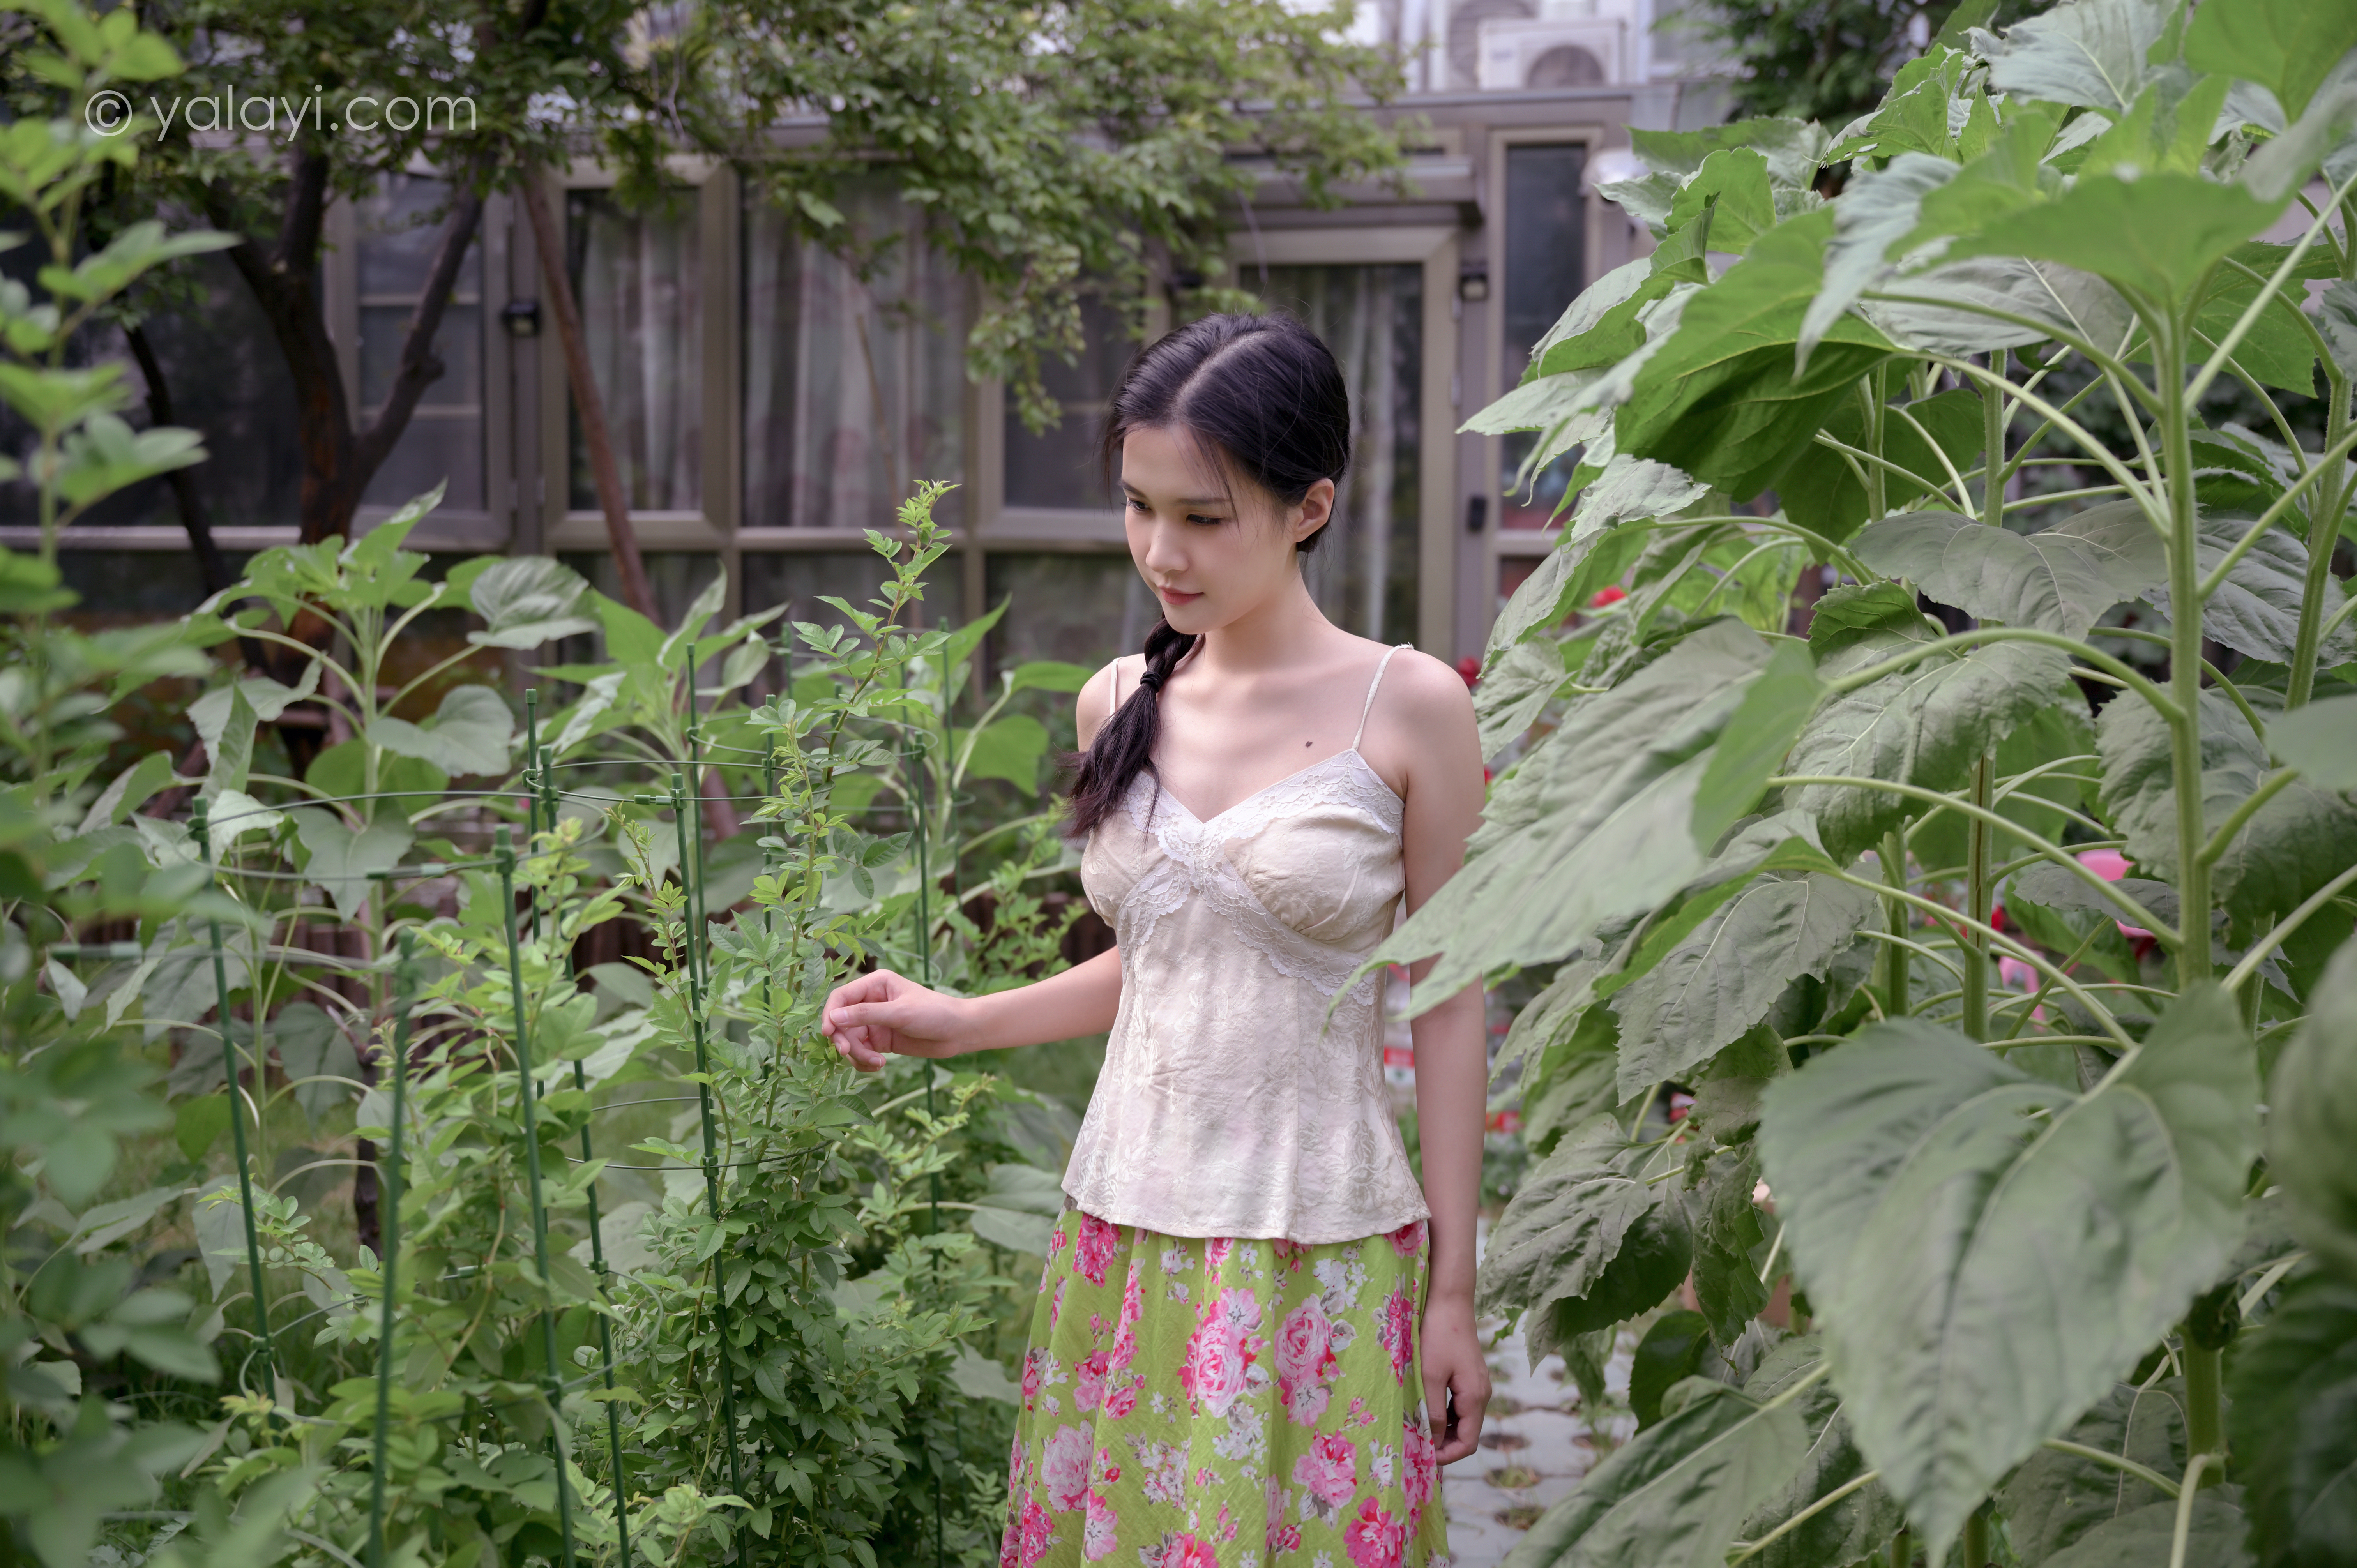 People 6048x4024 hanfu model Asian women yalayi brunette plants garden women outdoors